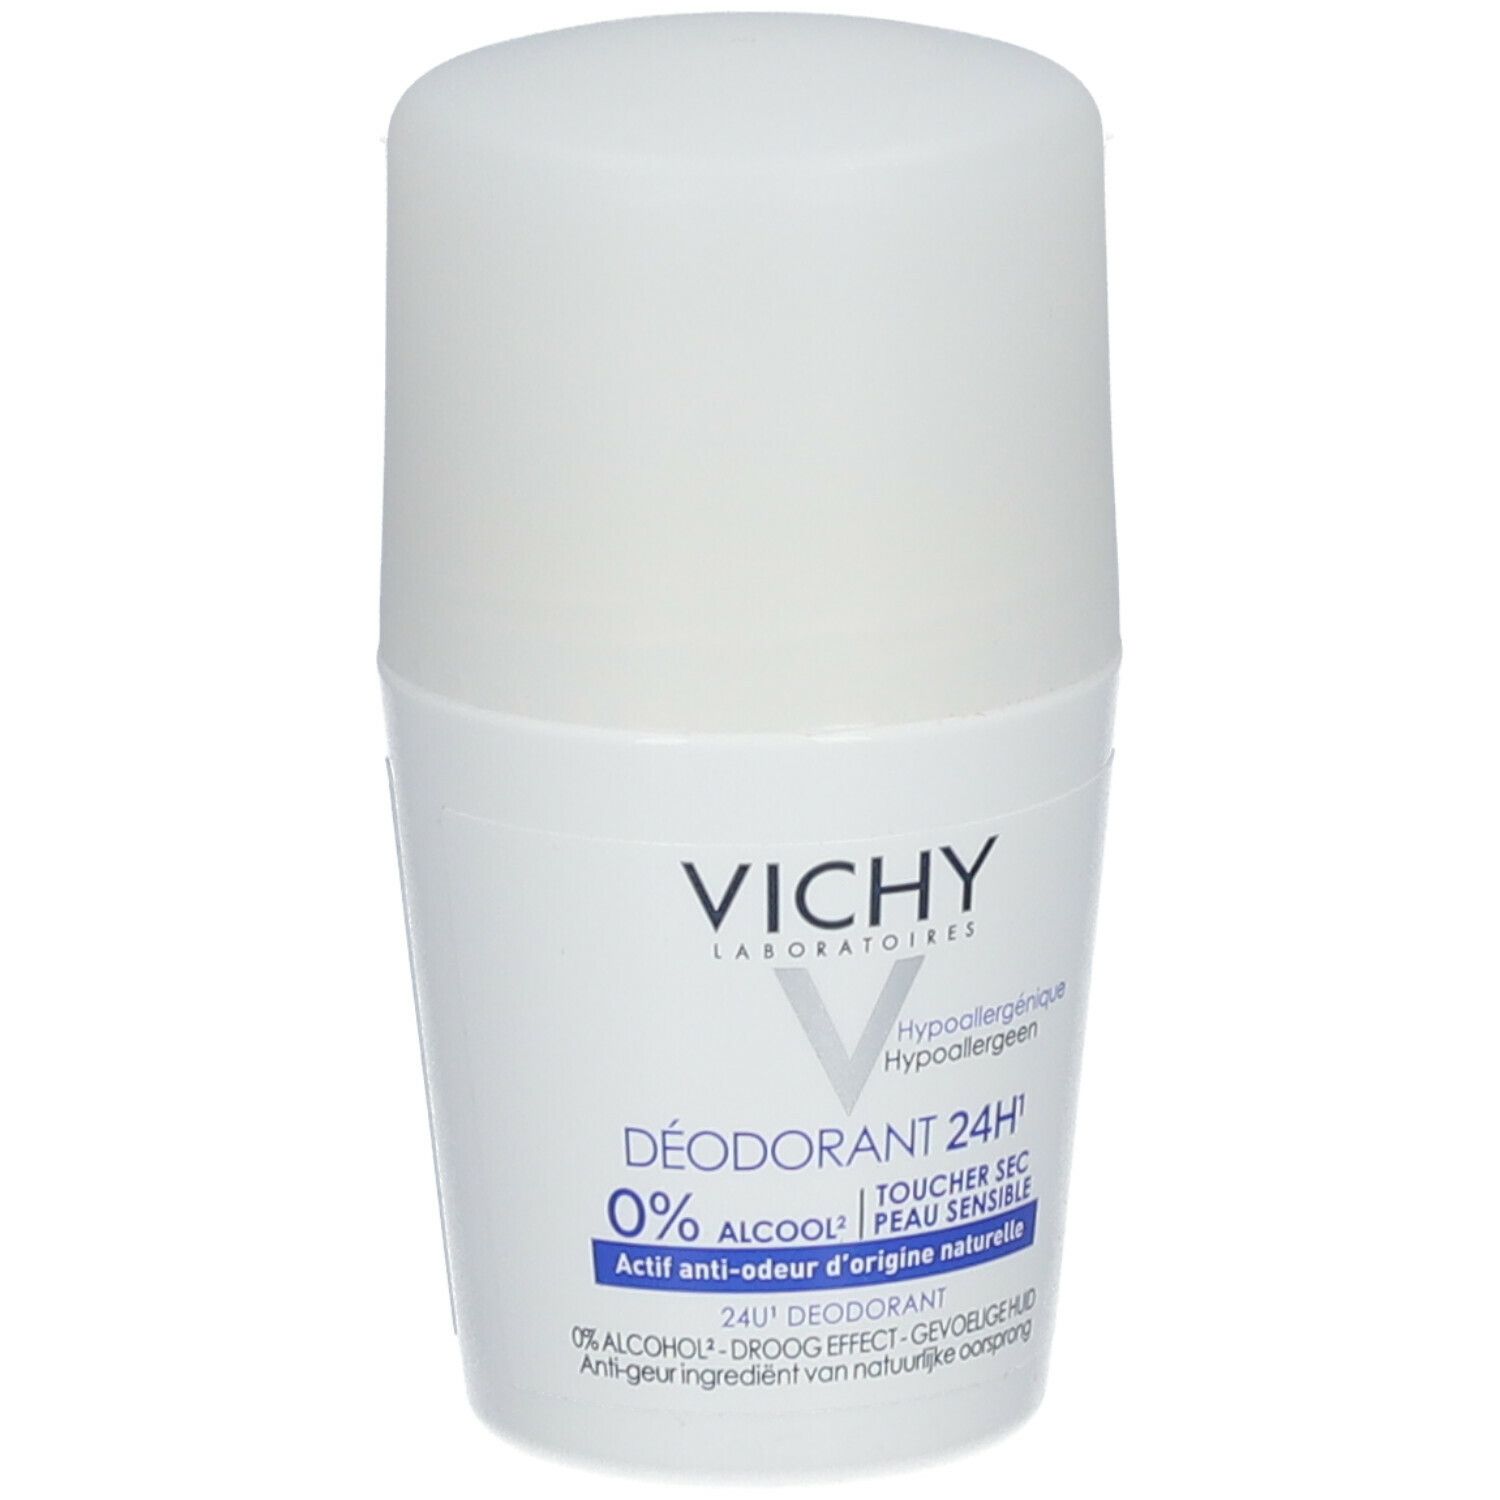 VICHY Déodorant 24H actif anti-odeur d'origine naturelle toucher sec - Roll-on